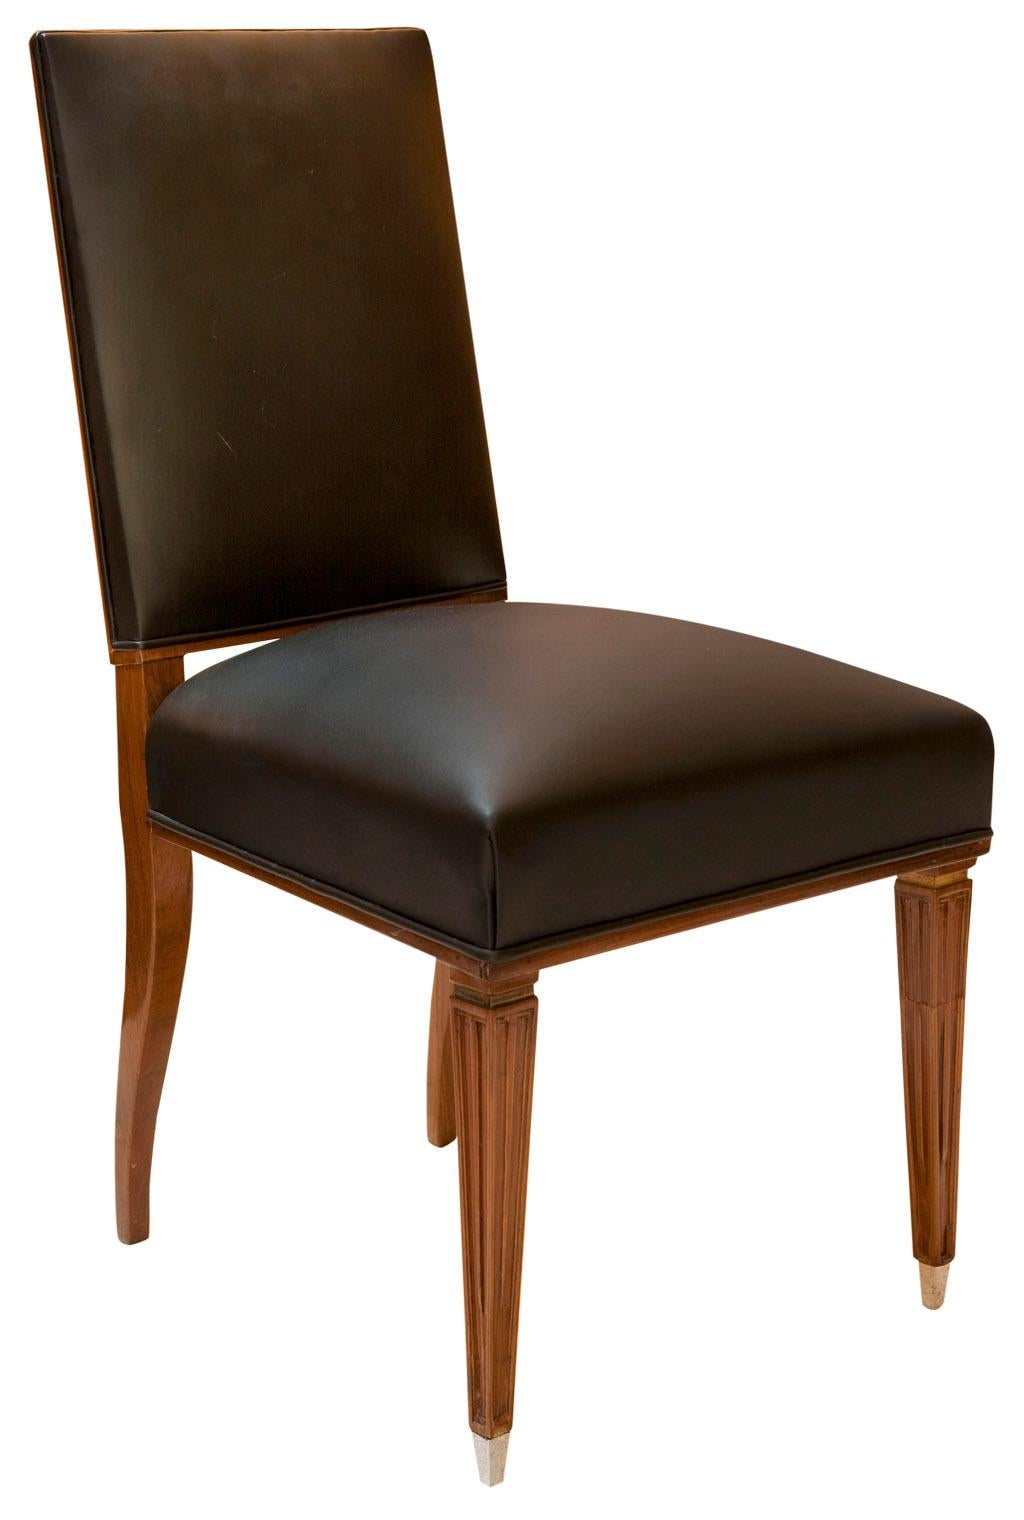 Luxe 12 chaises Art Déco en cuir et bois.

Année 1930
Pays : Français
Matériaux : bois, chrome et cuir.
Finition : laque polyuréthane
12 chaises élégantes et sophistiquées.
Vous voulez vivre dans l'âge d'or, ce sont les chaises dont votre projet a